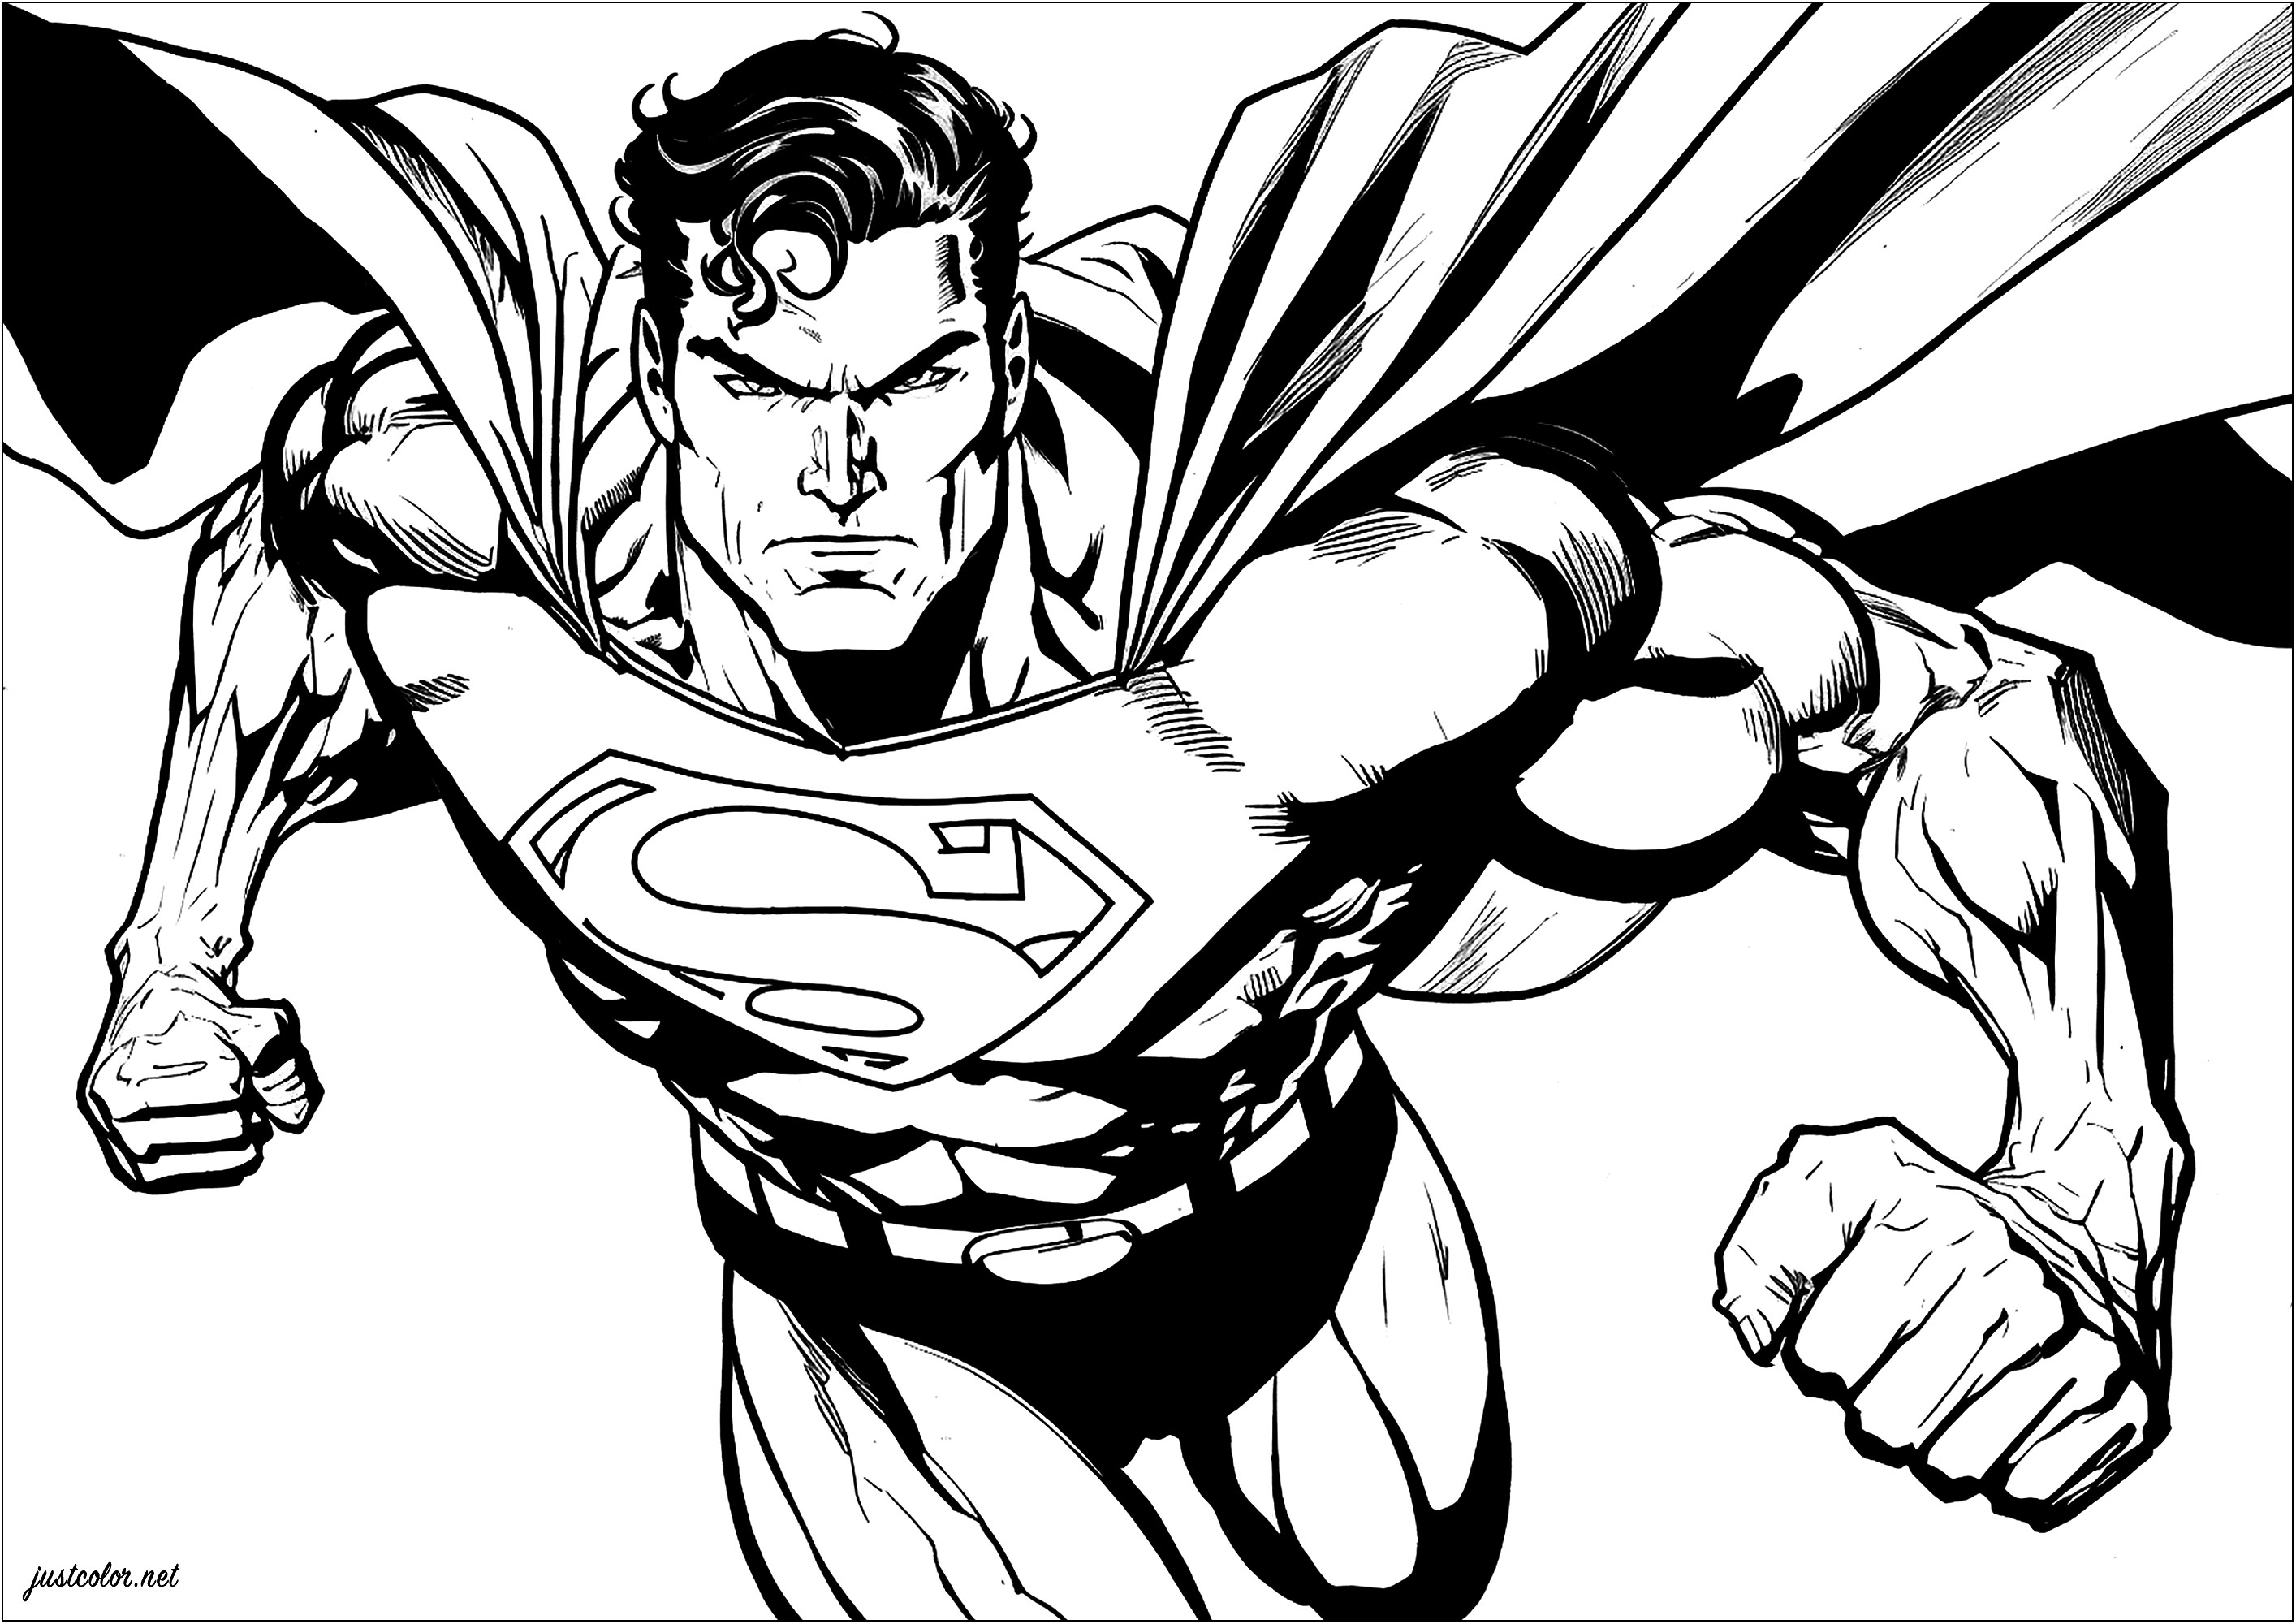 Superman e i suoi muscoli rigonfi, pronti per la battaglia. Preparate i pennarelli blu, rossi e gialli!